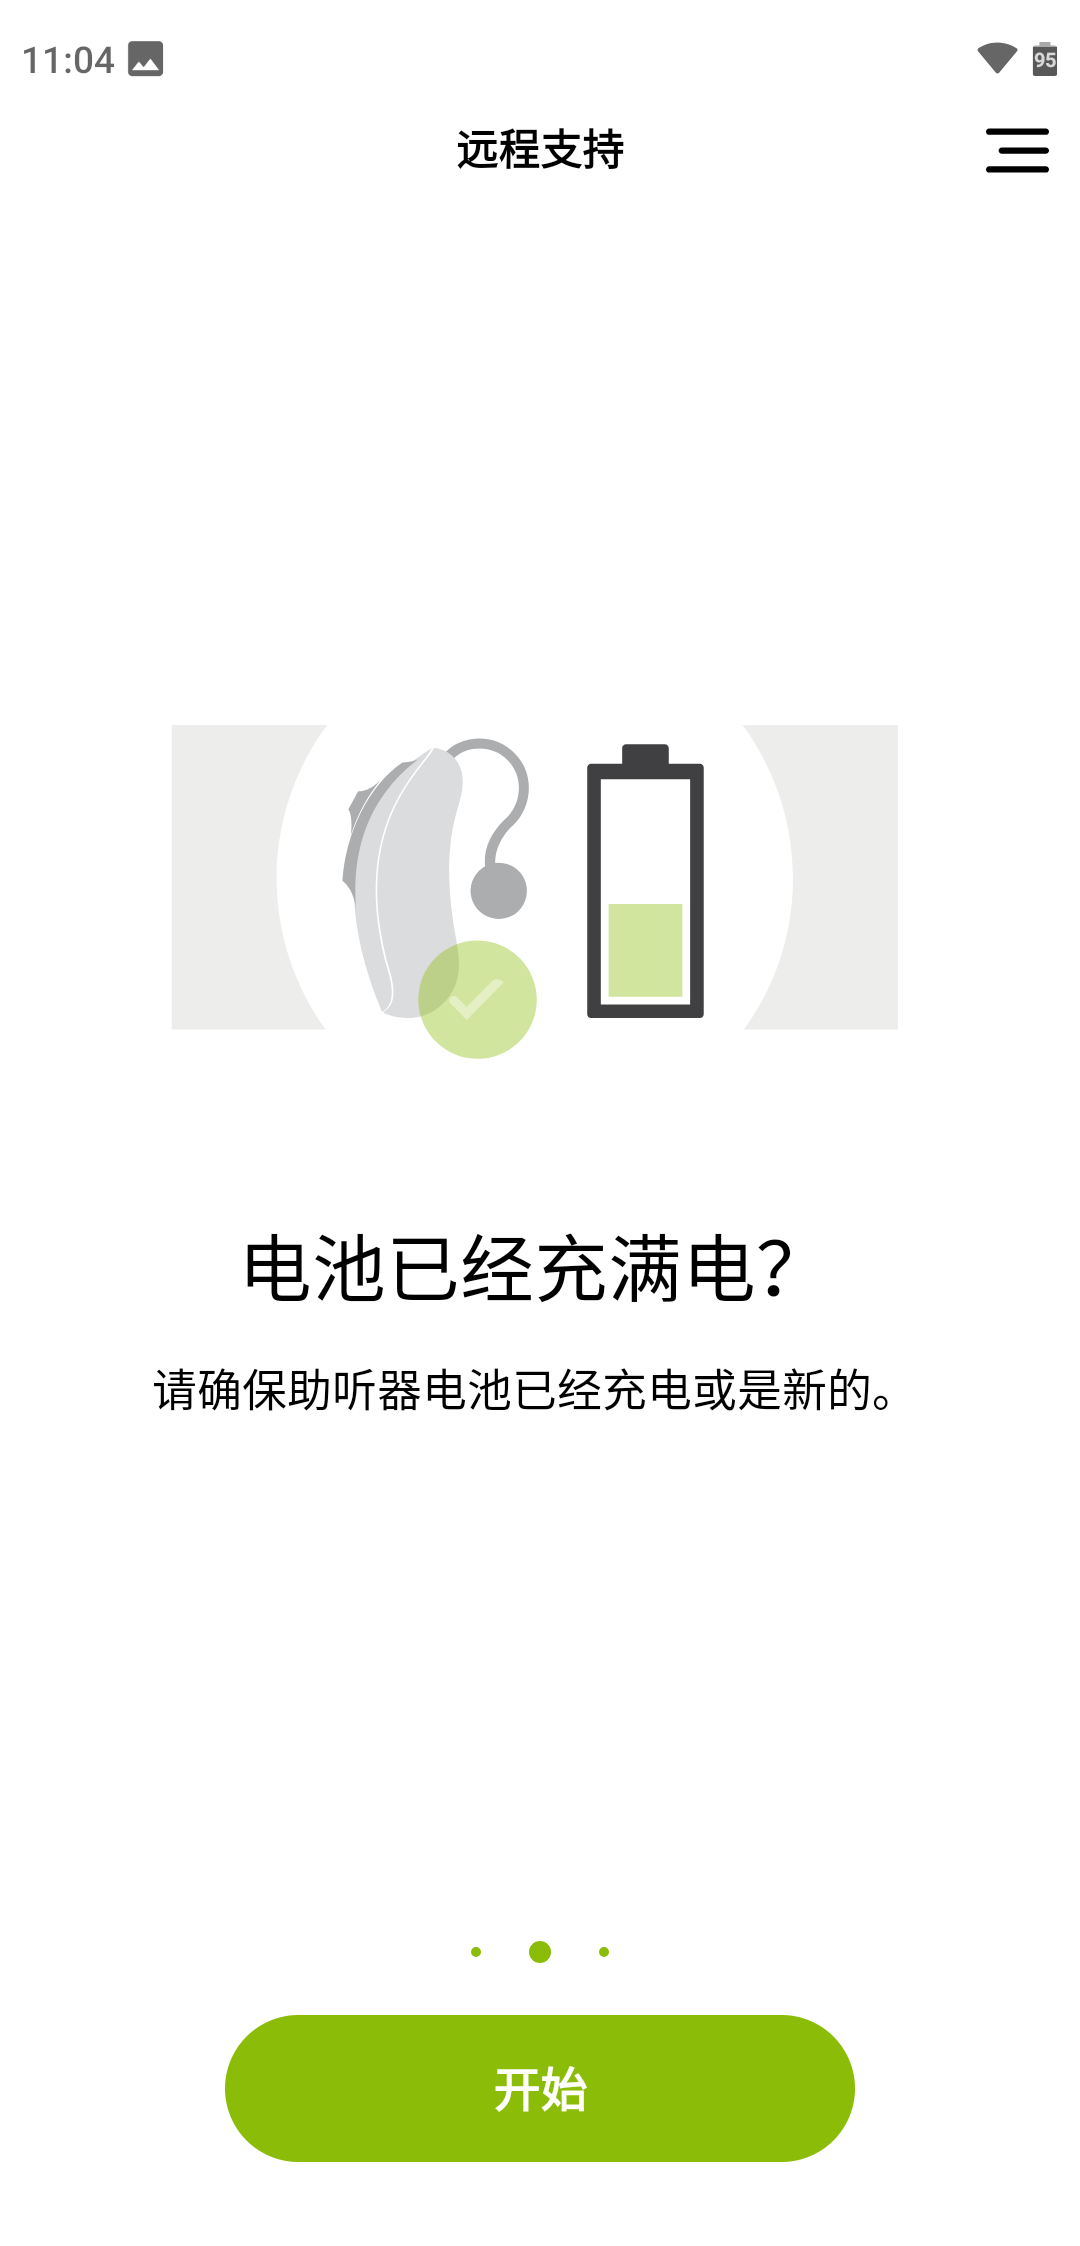 myPhonak峰力助听器app最新版本5